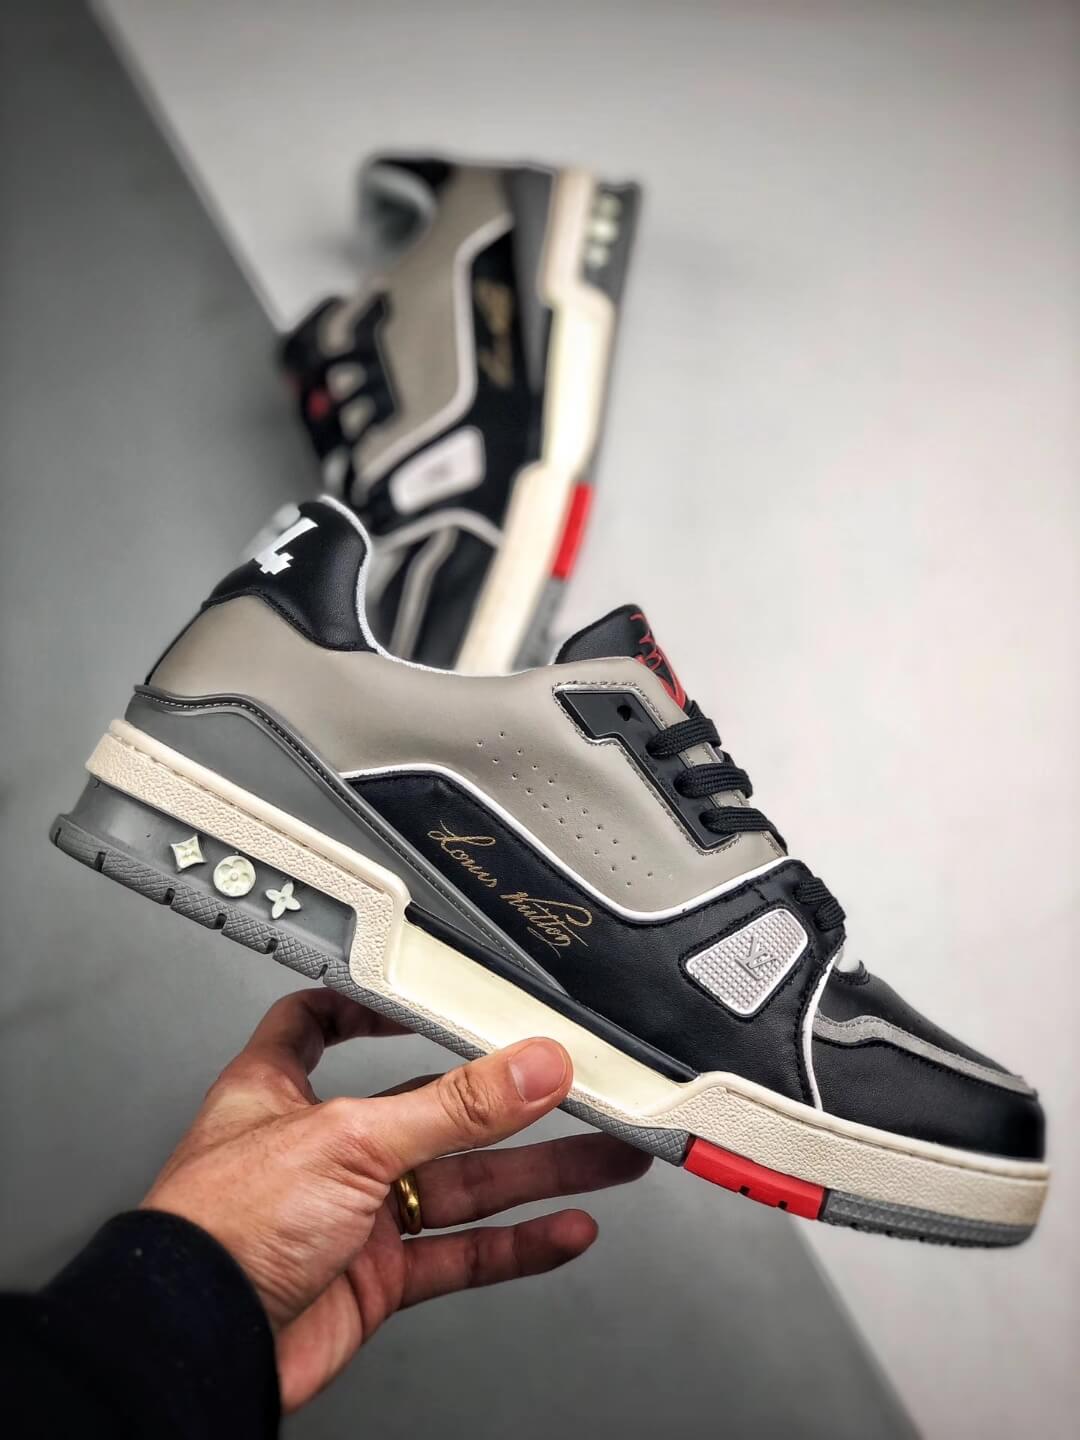 Louis Vuitton Trainer Black Grey Men's Sneakers Shoes